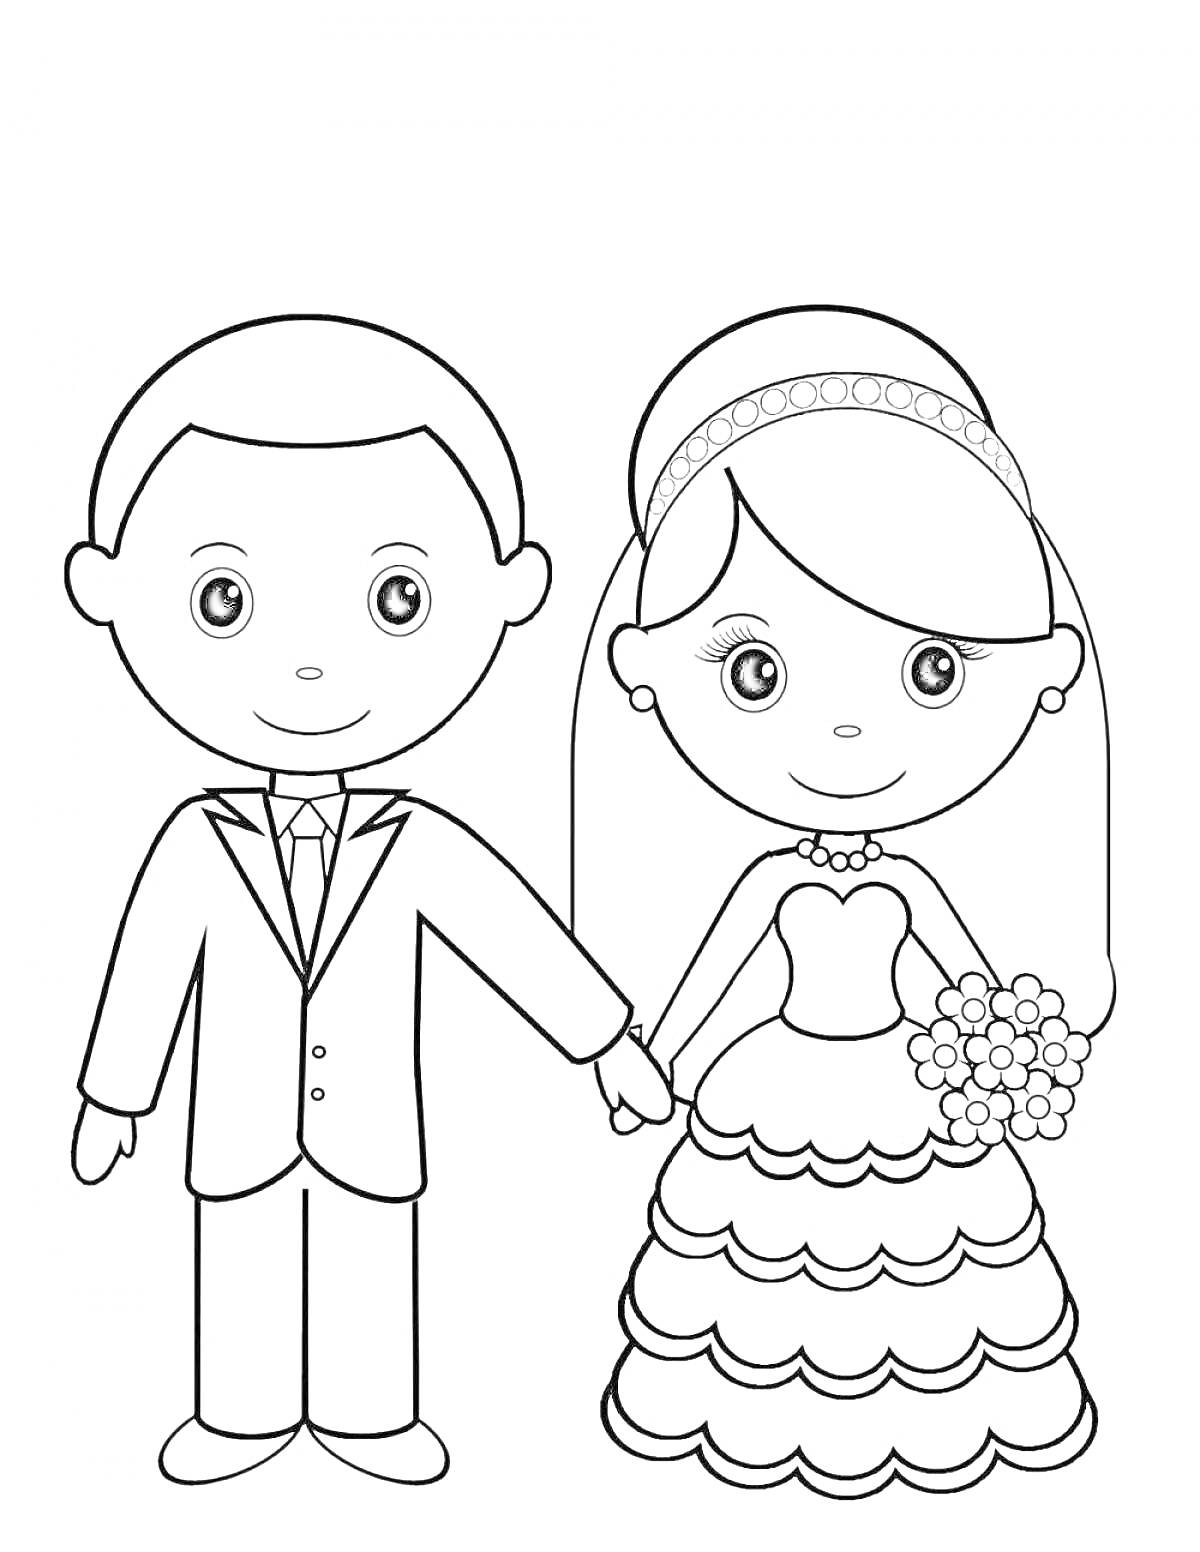 Раскраска Мужчина в костюме и девочка в свадебном платье с цветами